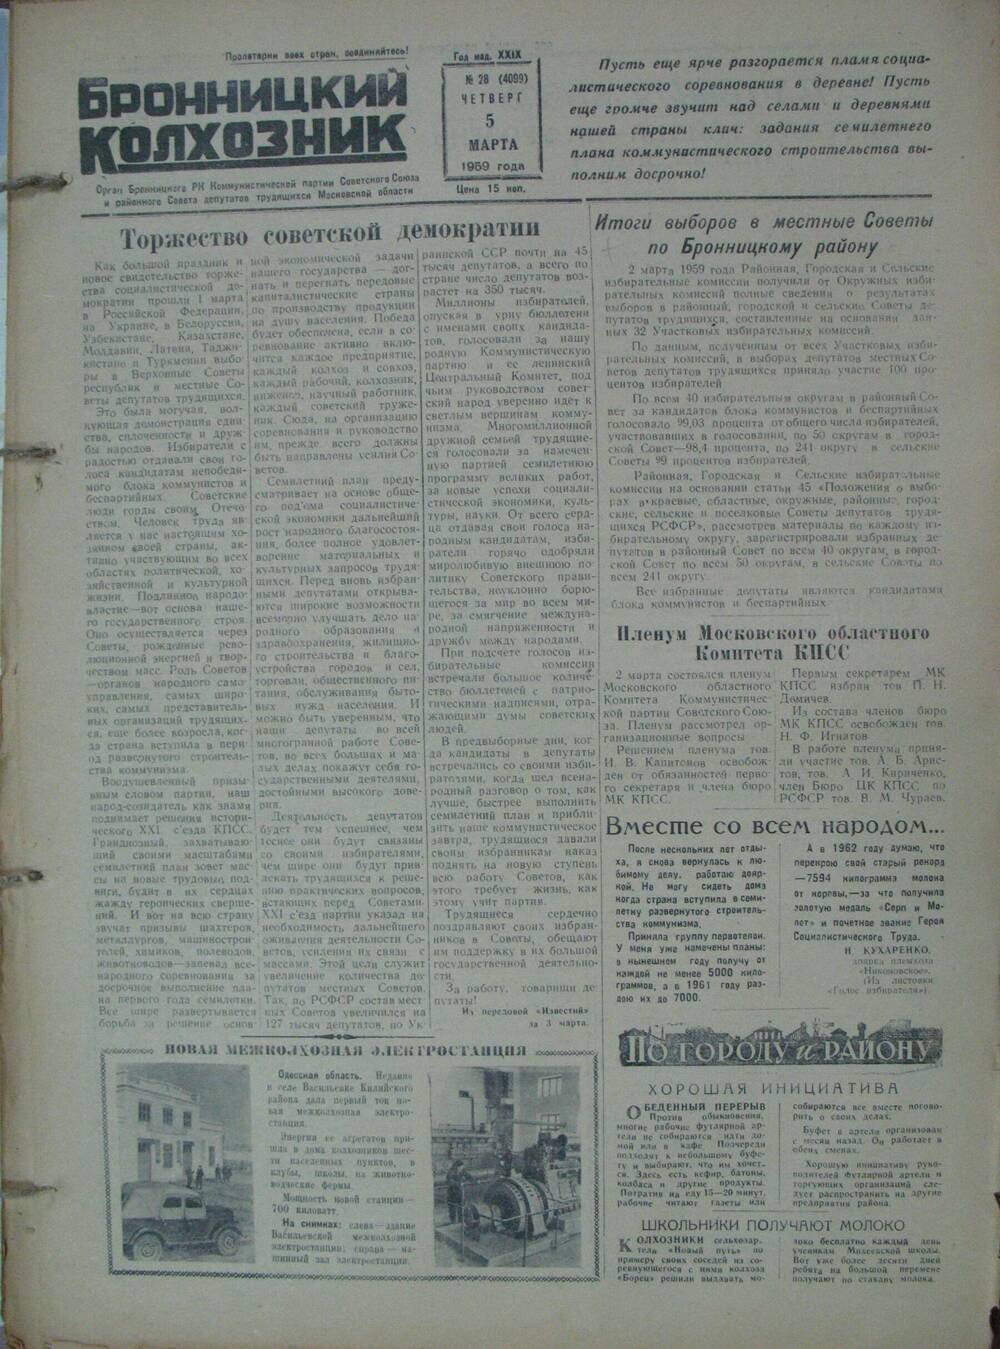 Бронницкий колхозник,  газета № 28 от 5 марта 1959г